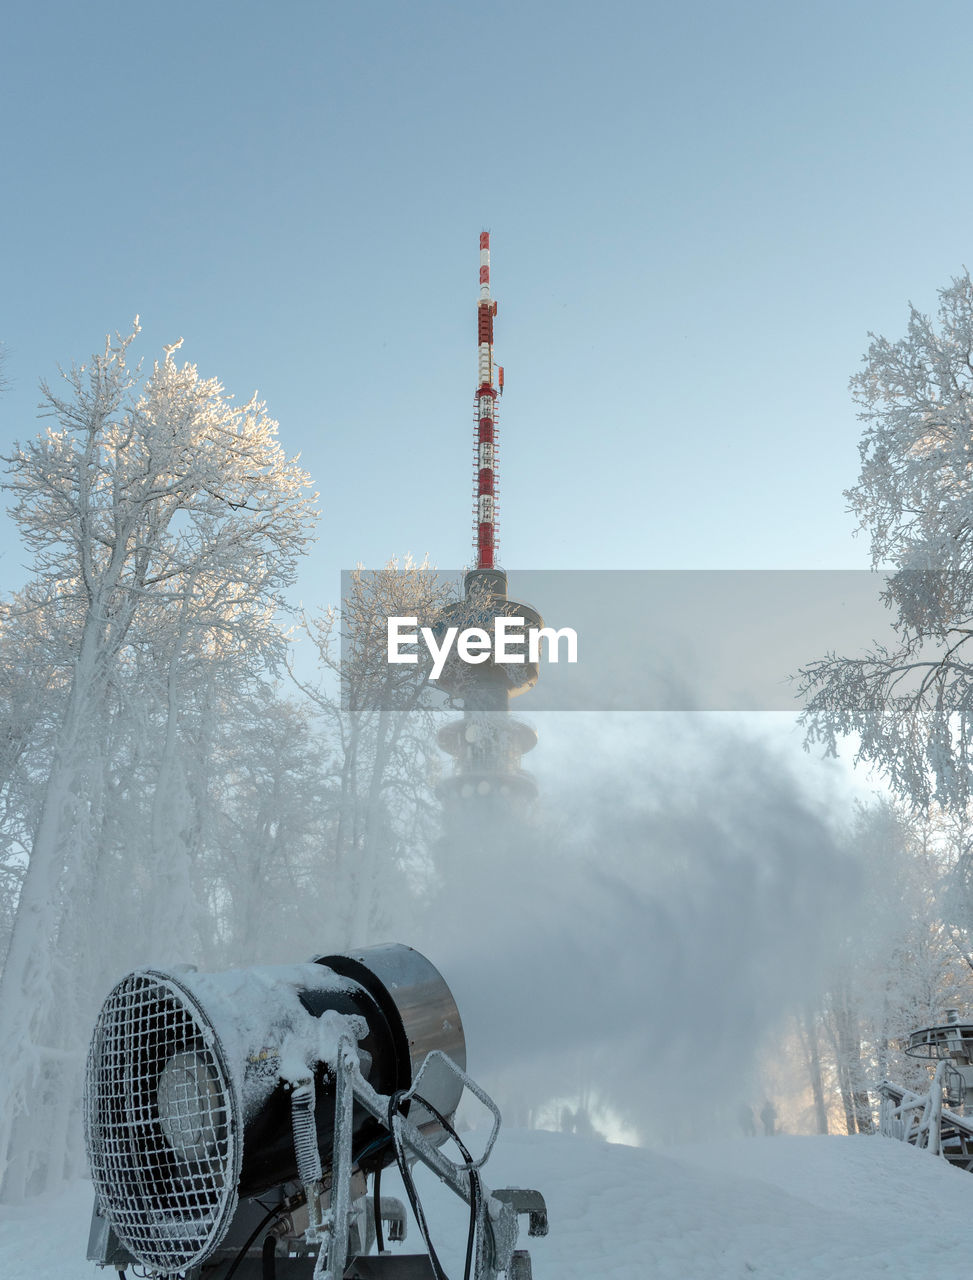 Snowmaking machine in action in ski resort sljeme near zagreb, croatia